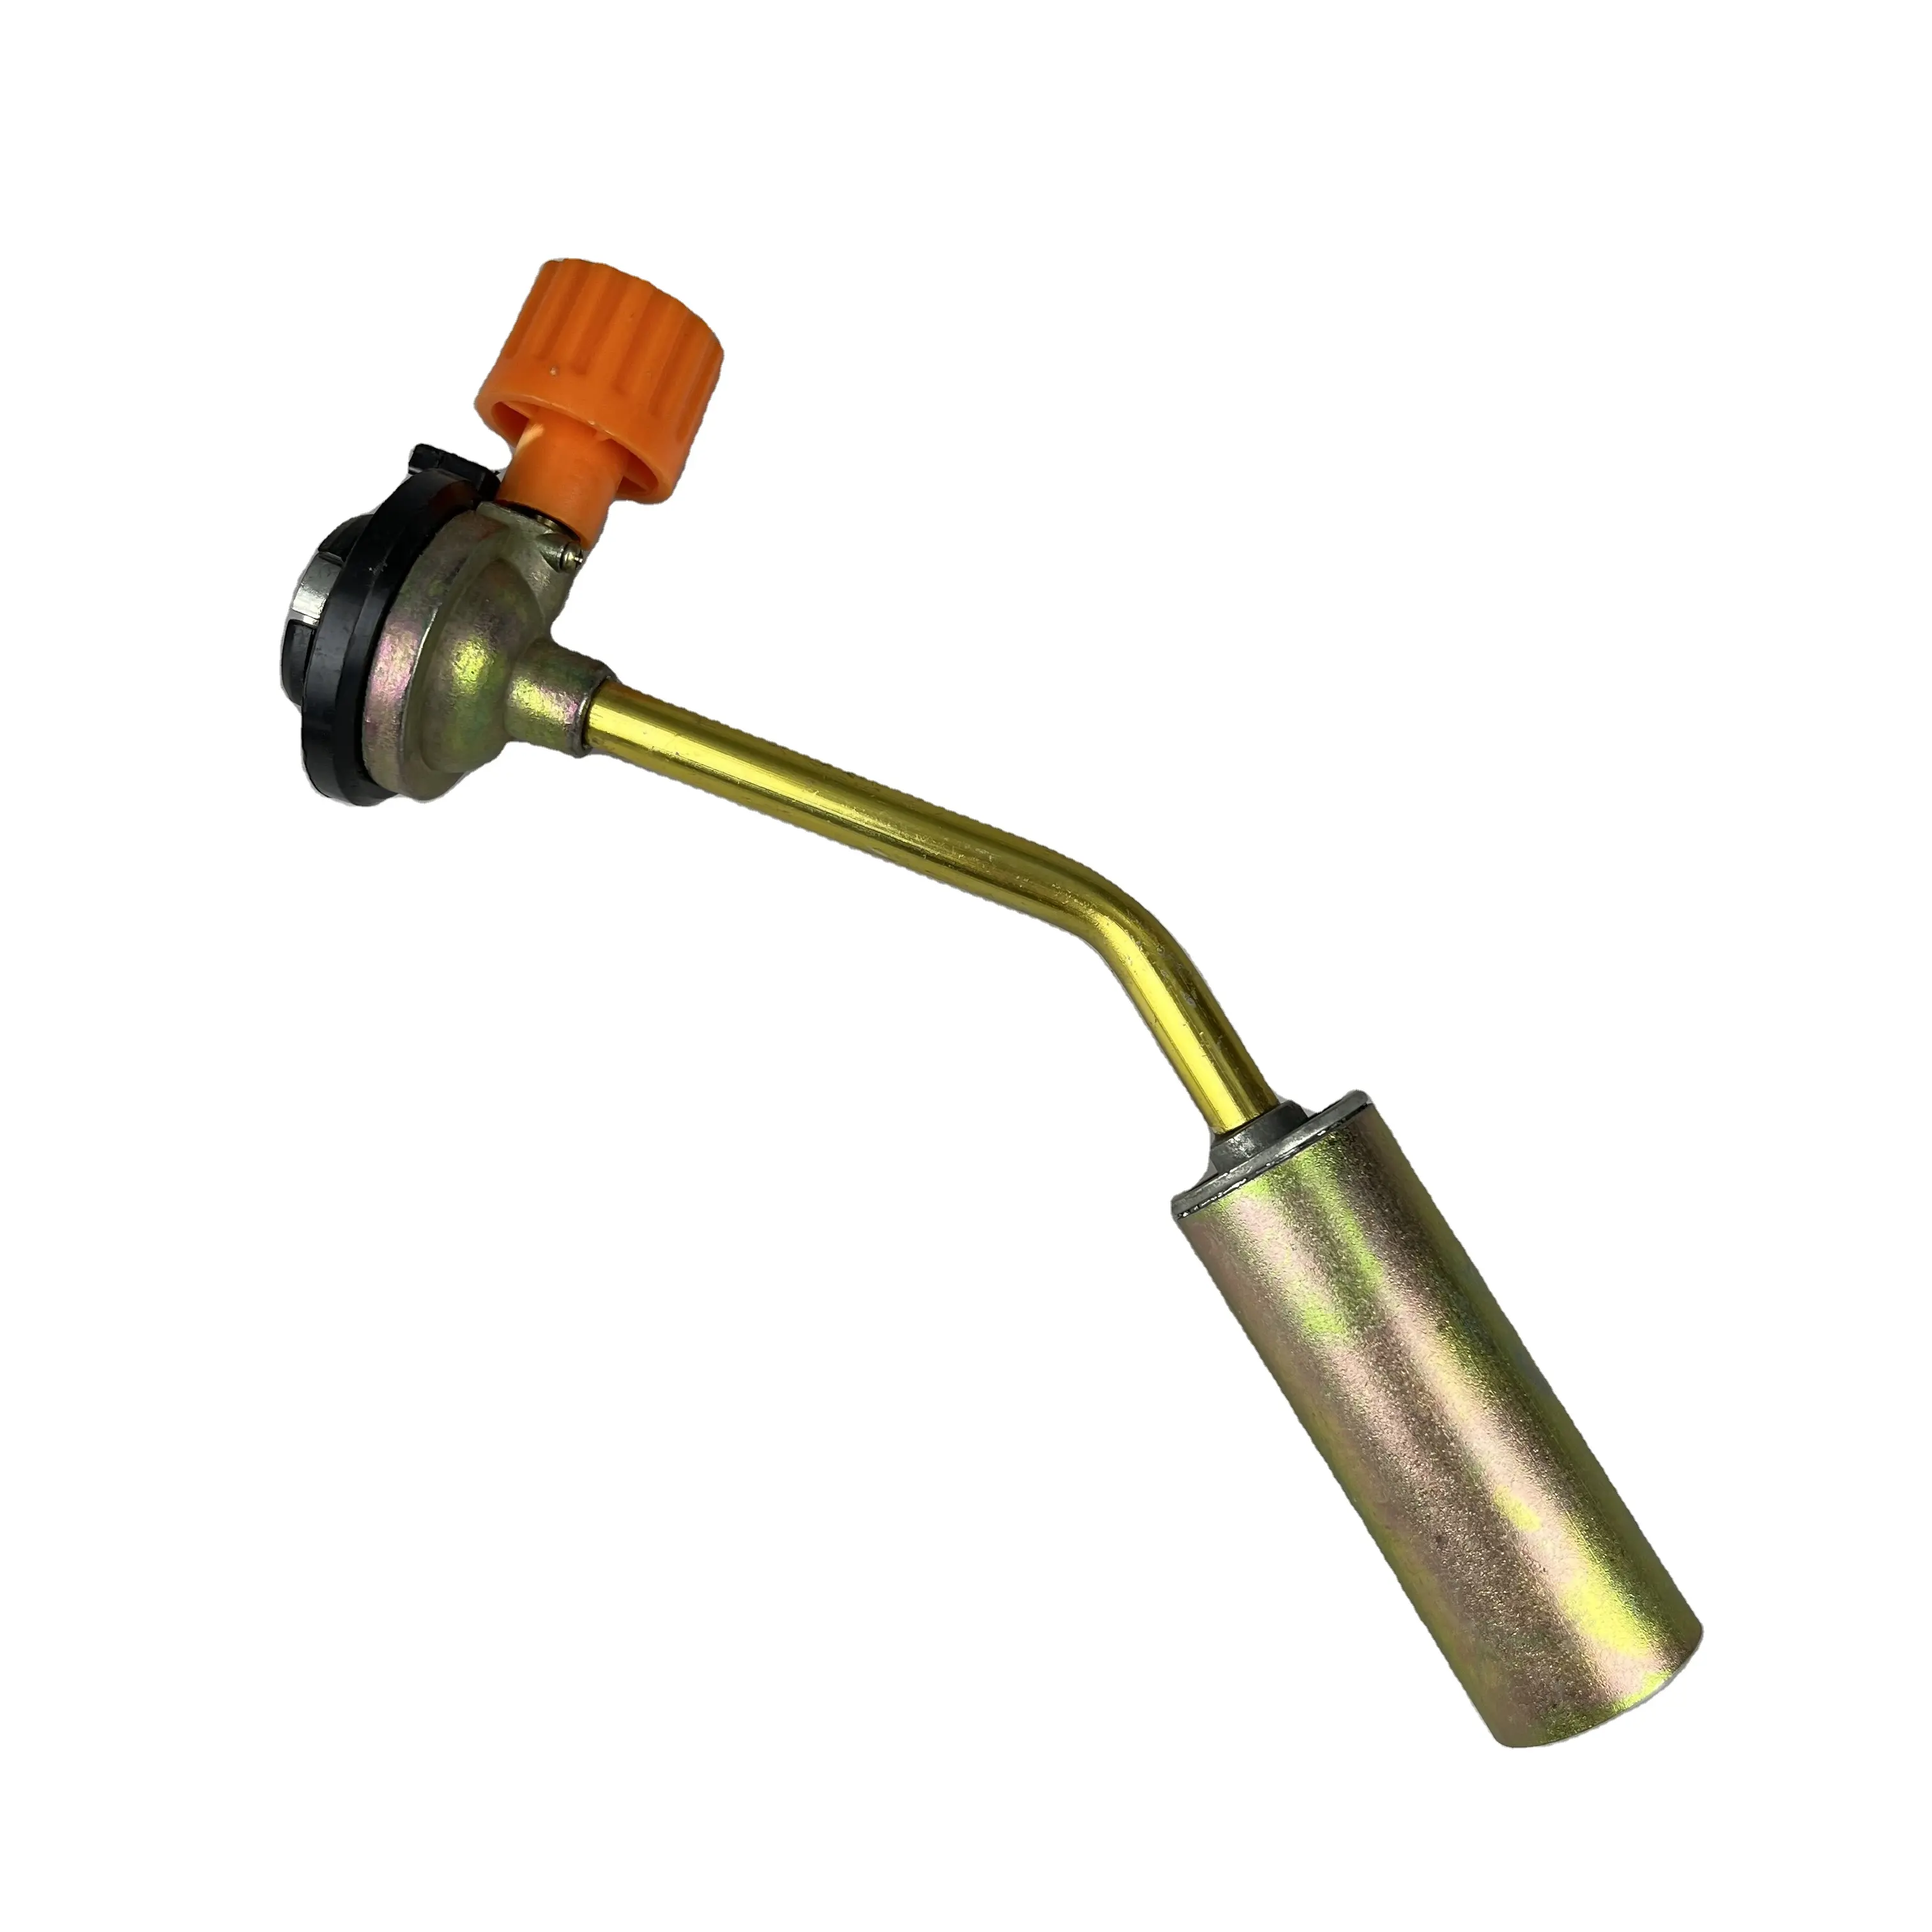 GTYPRO lampe torche de soufflage torche polyvalente pour usage domestique ou Commercial torche de soudage au gaz